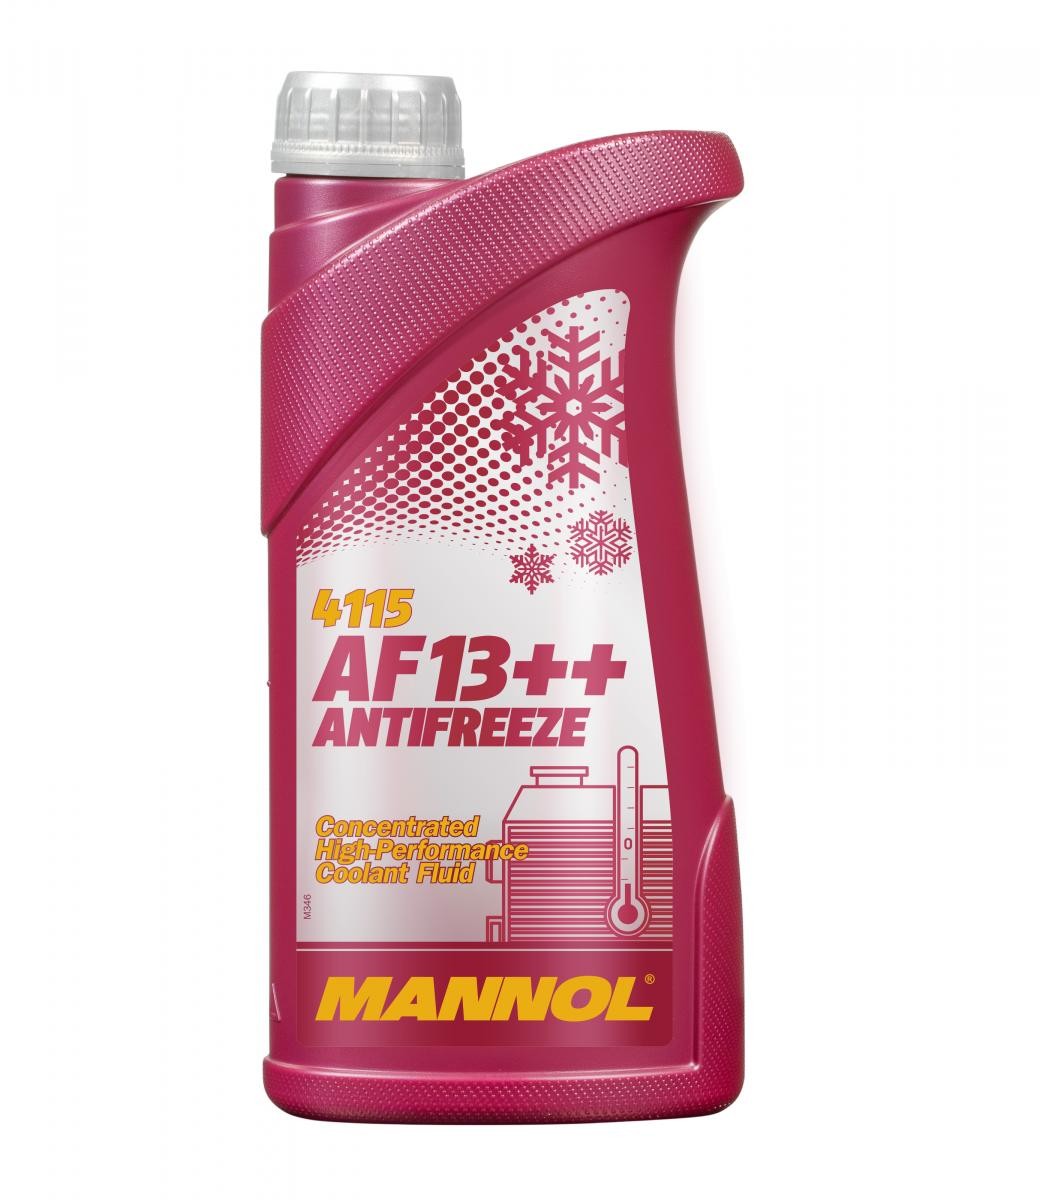 MANNOL AF13++, High-performance MN4115-1 Nemrznoucí kapalina specifikace: G12